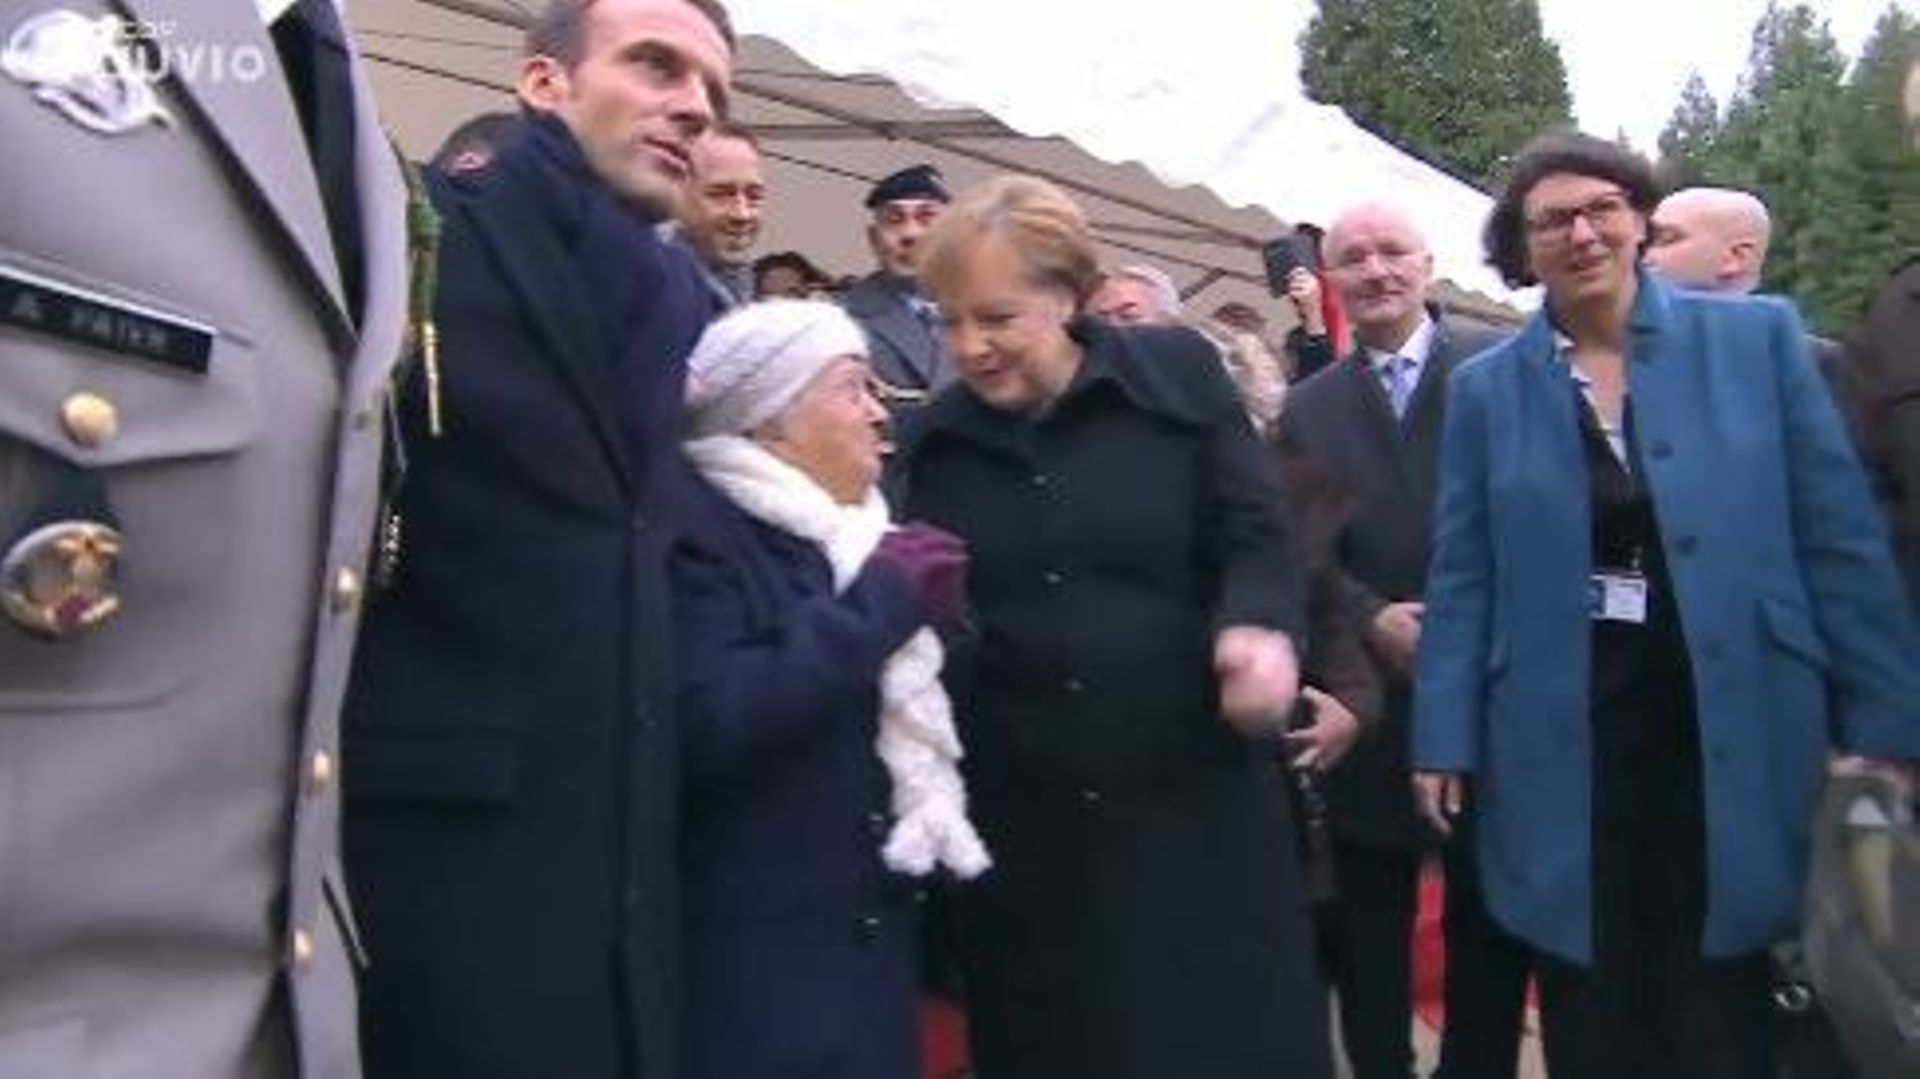 Angela Merkel prise pour l'épouse du président Macron